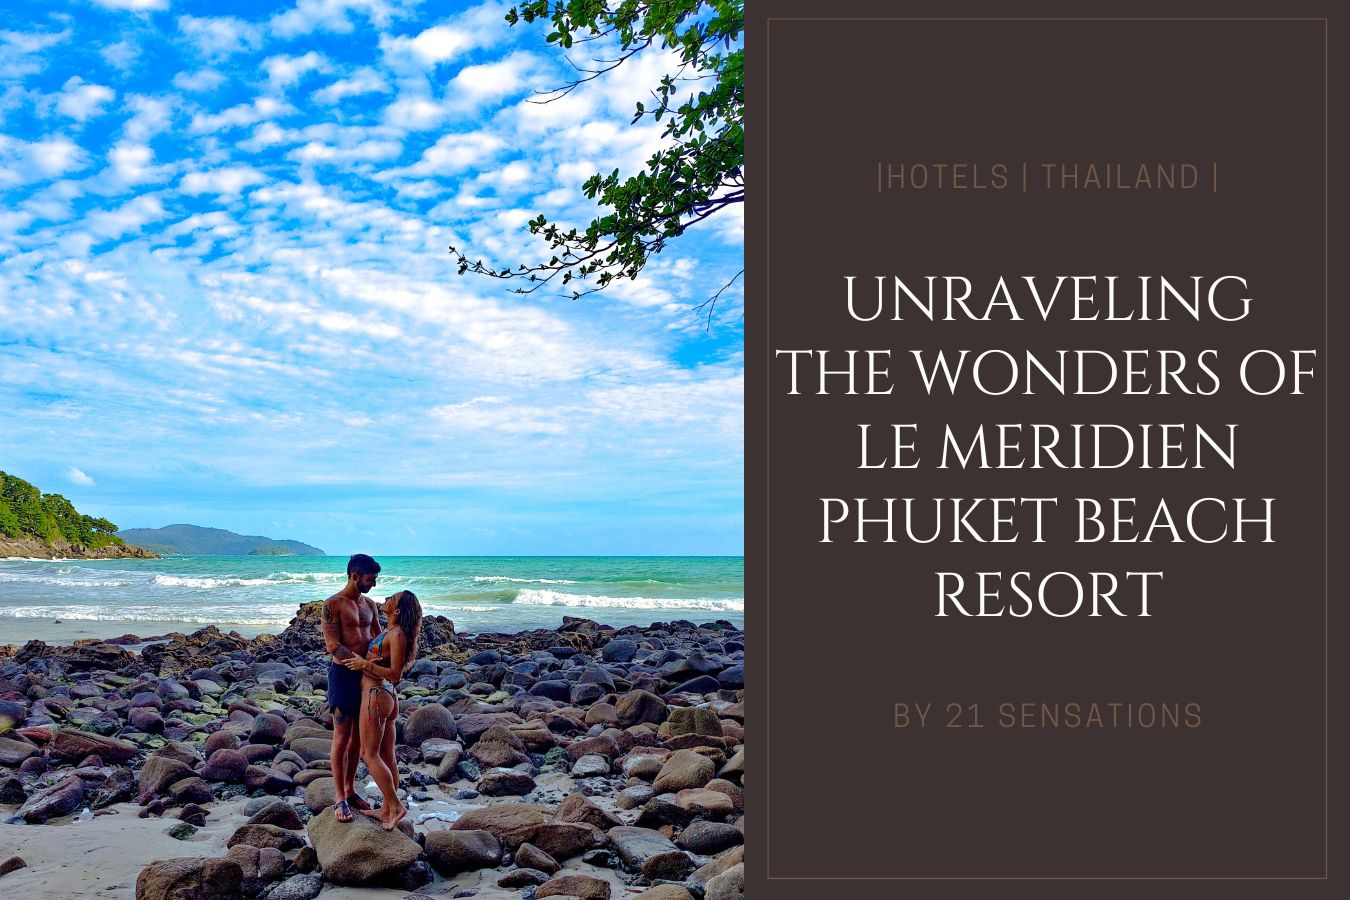 Unraveling the Wonders of Le Meridien Phuket Beach Resort